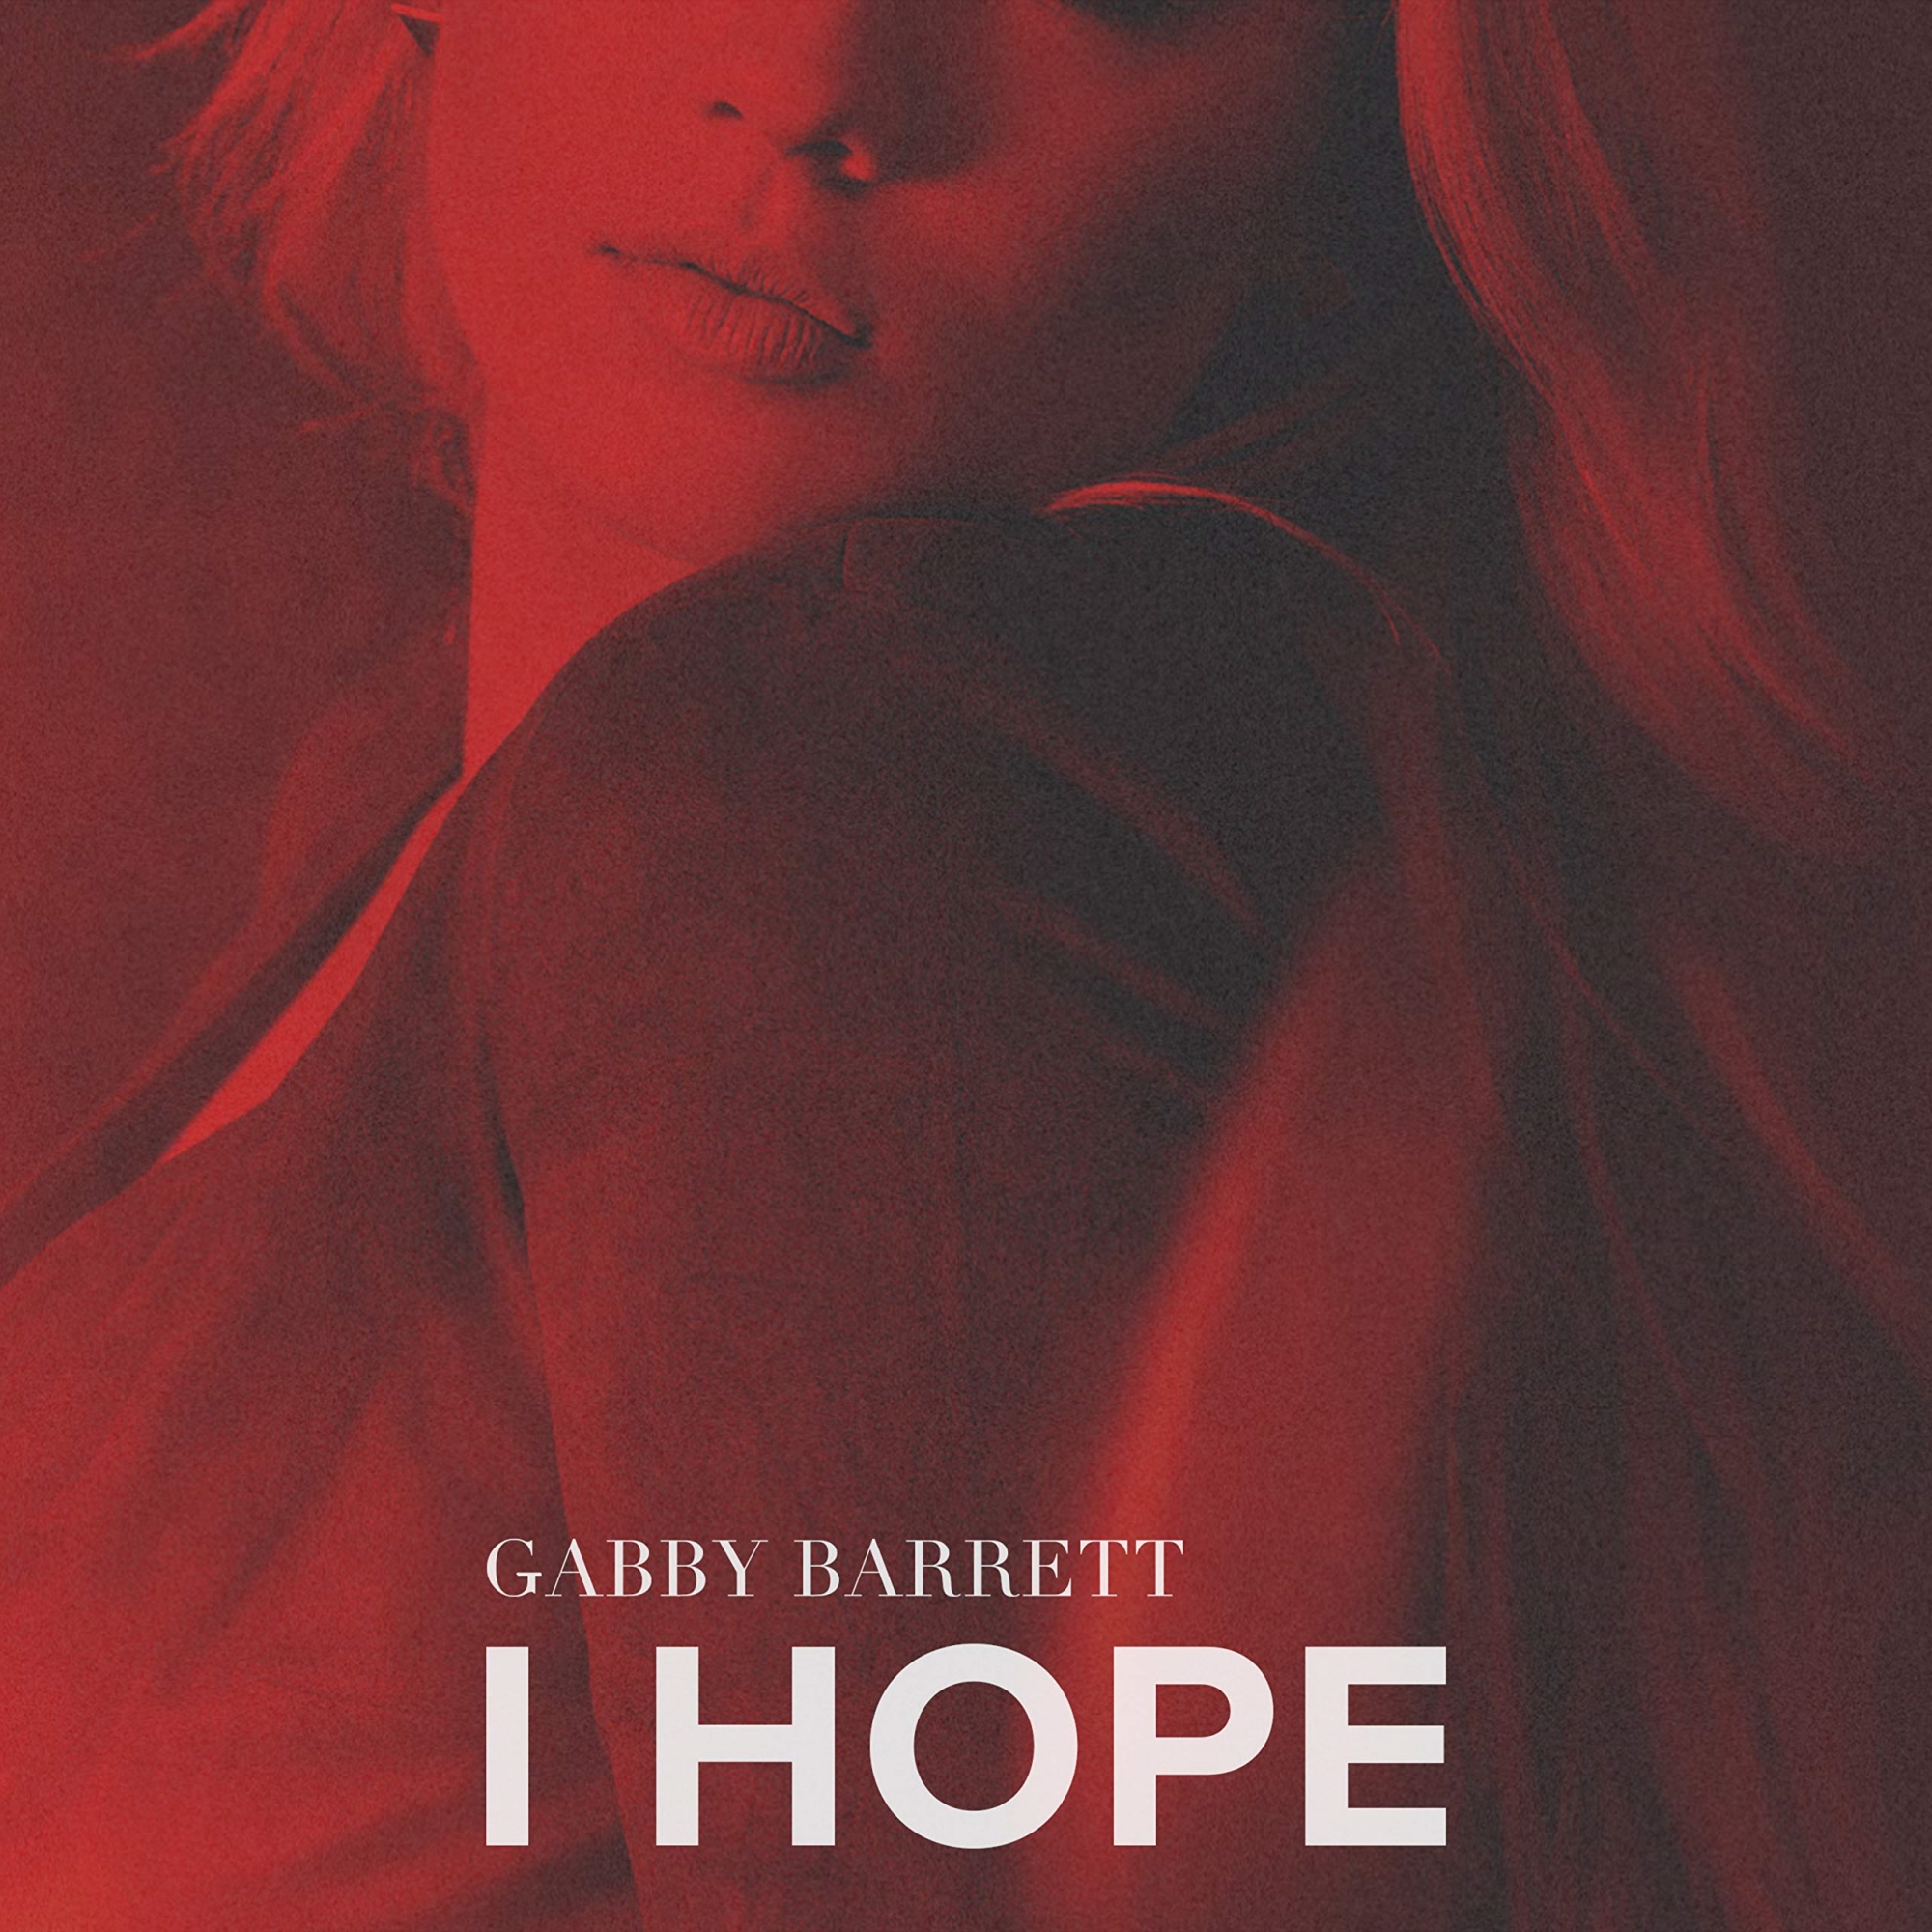 Gabby Barrett - I Hope
Released: January 25, 2019 
Label: Warner Music Nashville
